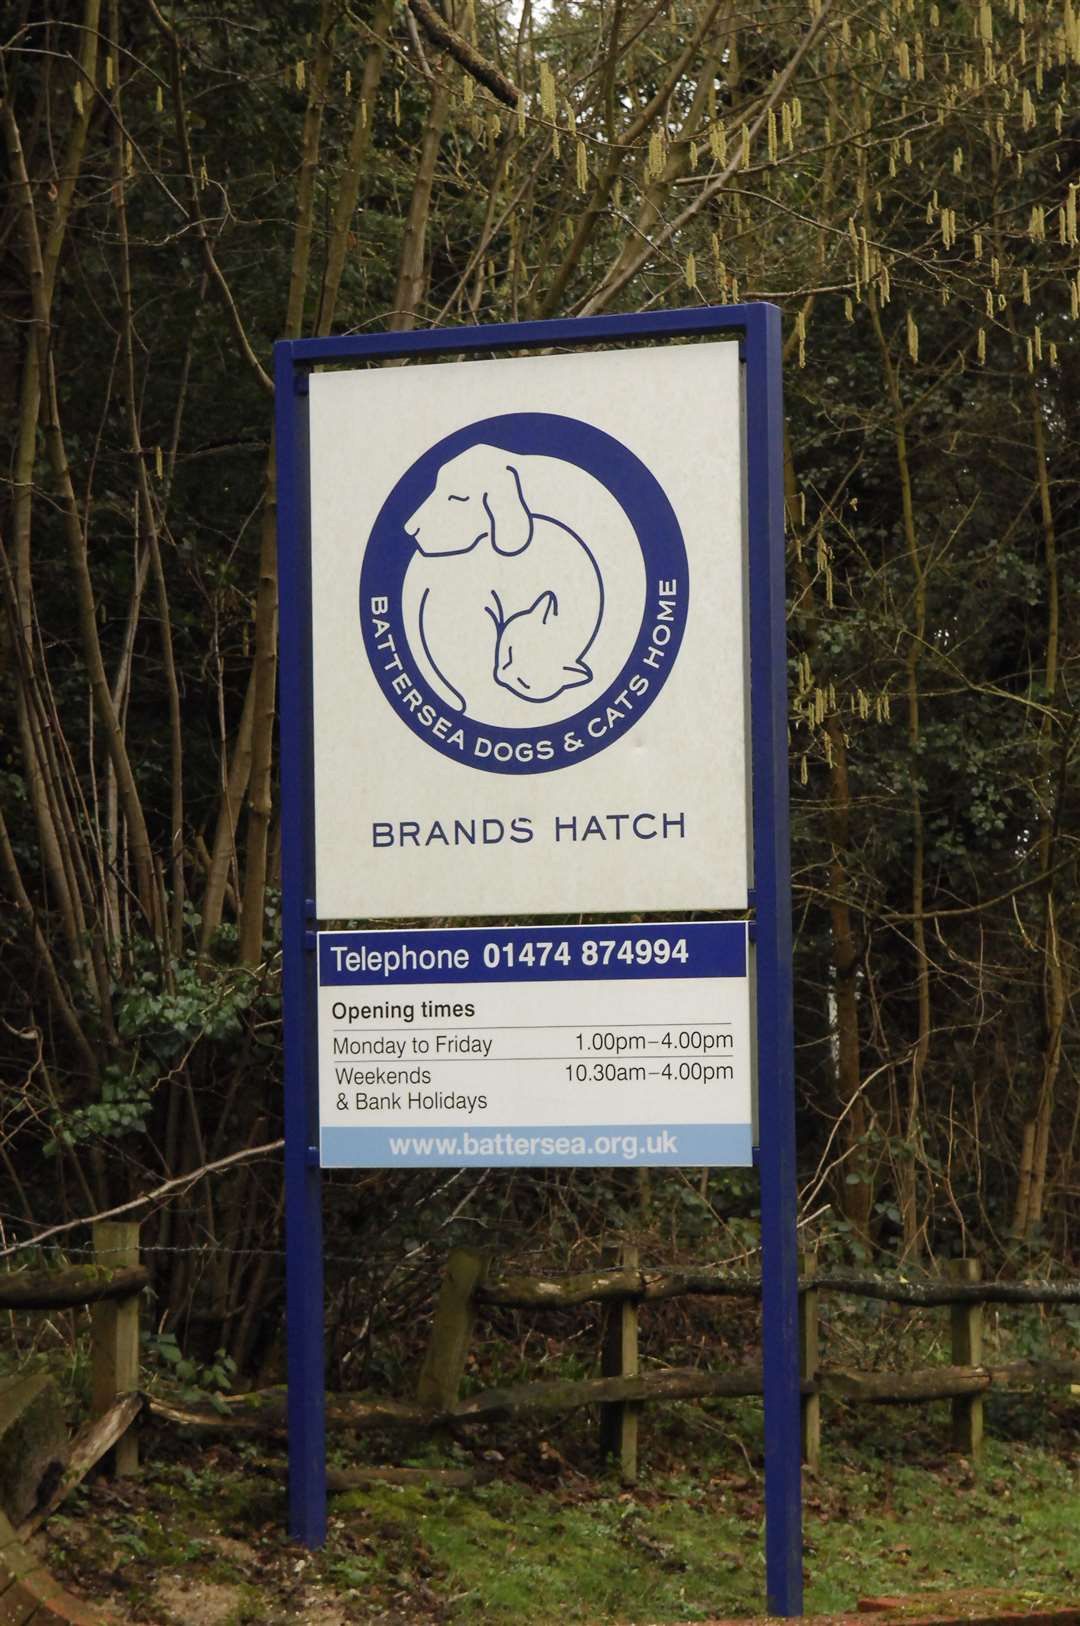 Battersea animal shelter at Brands Hatch